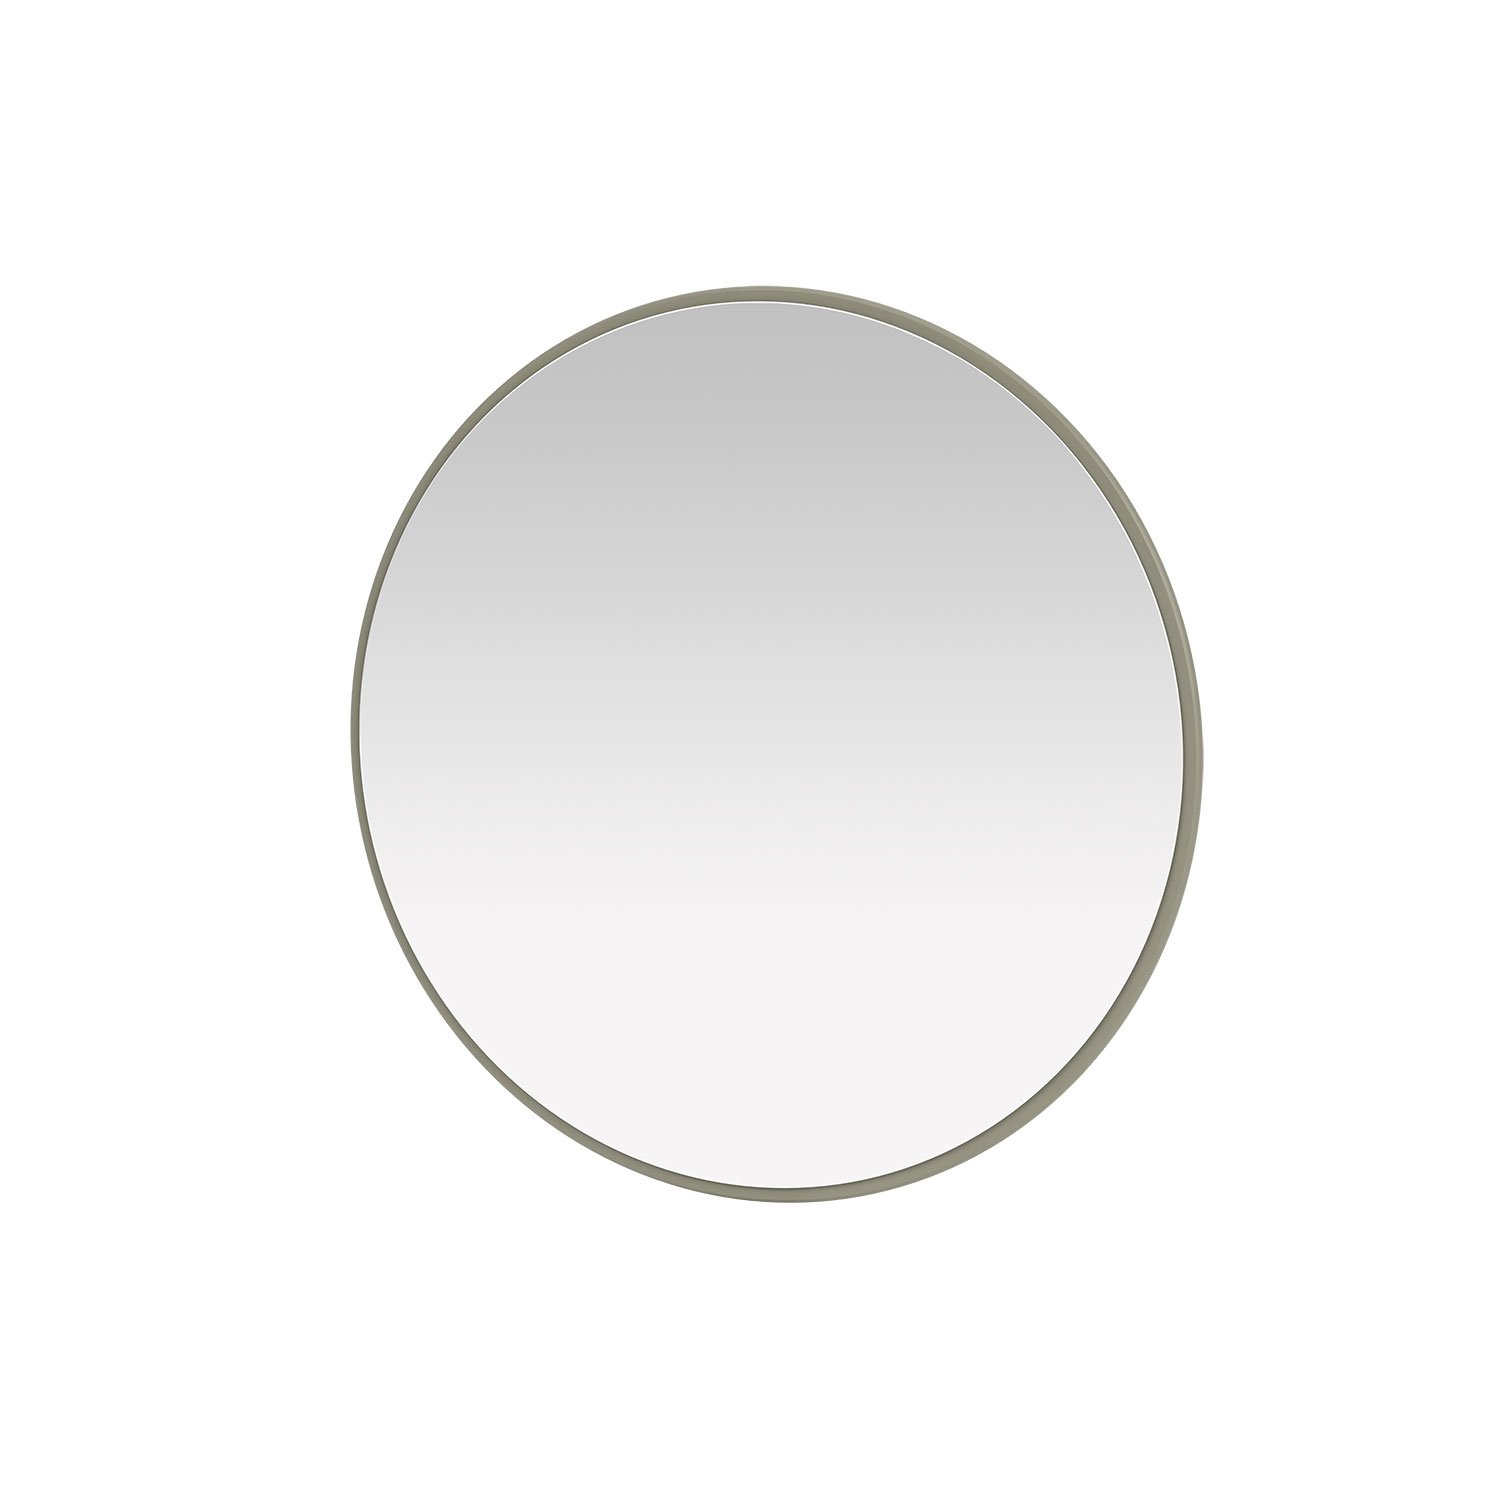 AROUND mirror, Fennel